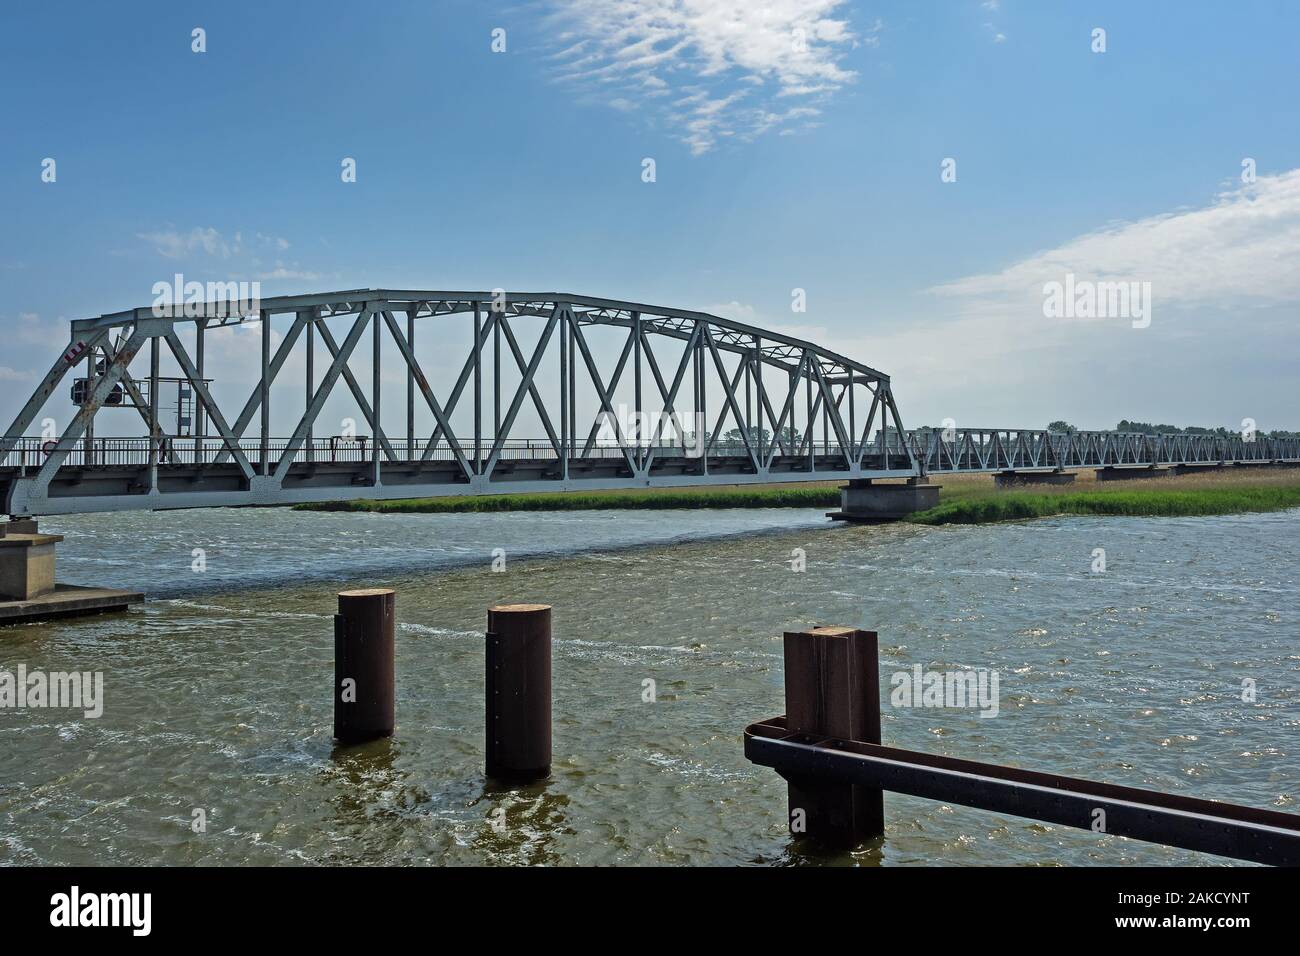 Brücke Meiningen zwischen Bresewitz und Zingst, Mecklenburg-Vorpommern, Deutschland Stockfoto